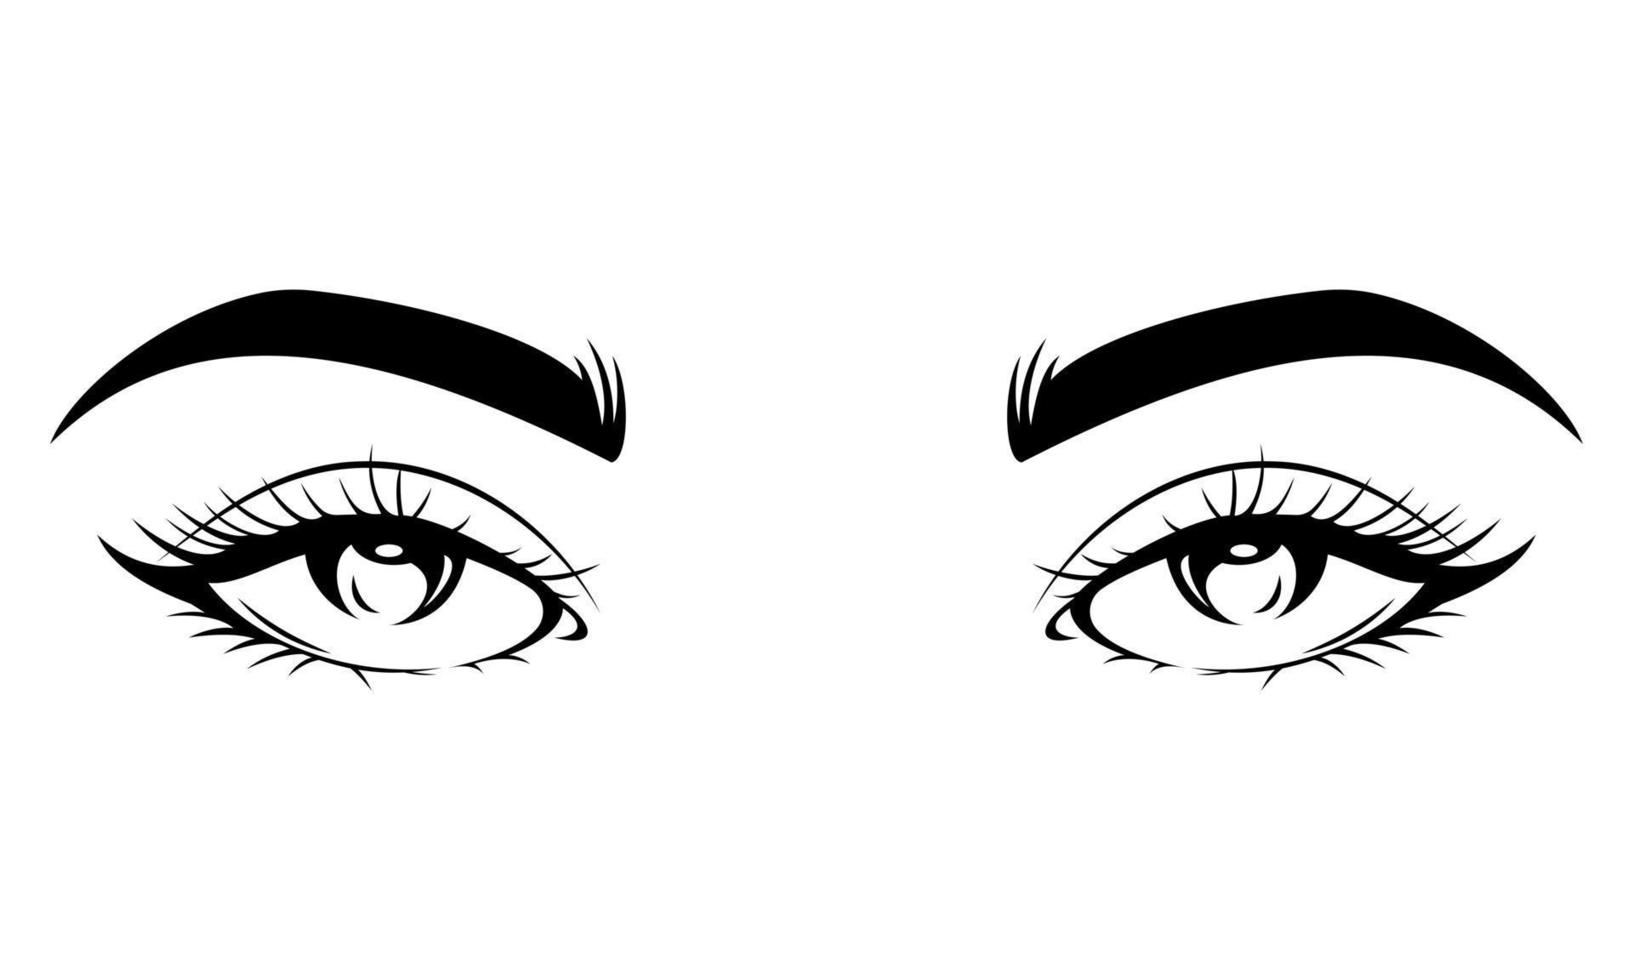 olhos de menina preto e branco, cílios e sobrancelhas - arte de silhueta de olhos de menina vetor